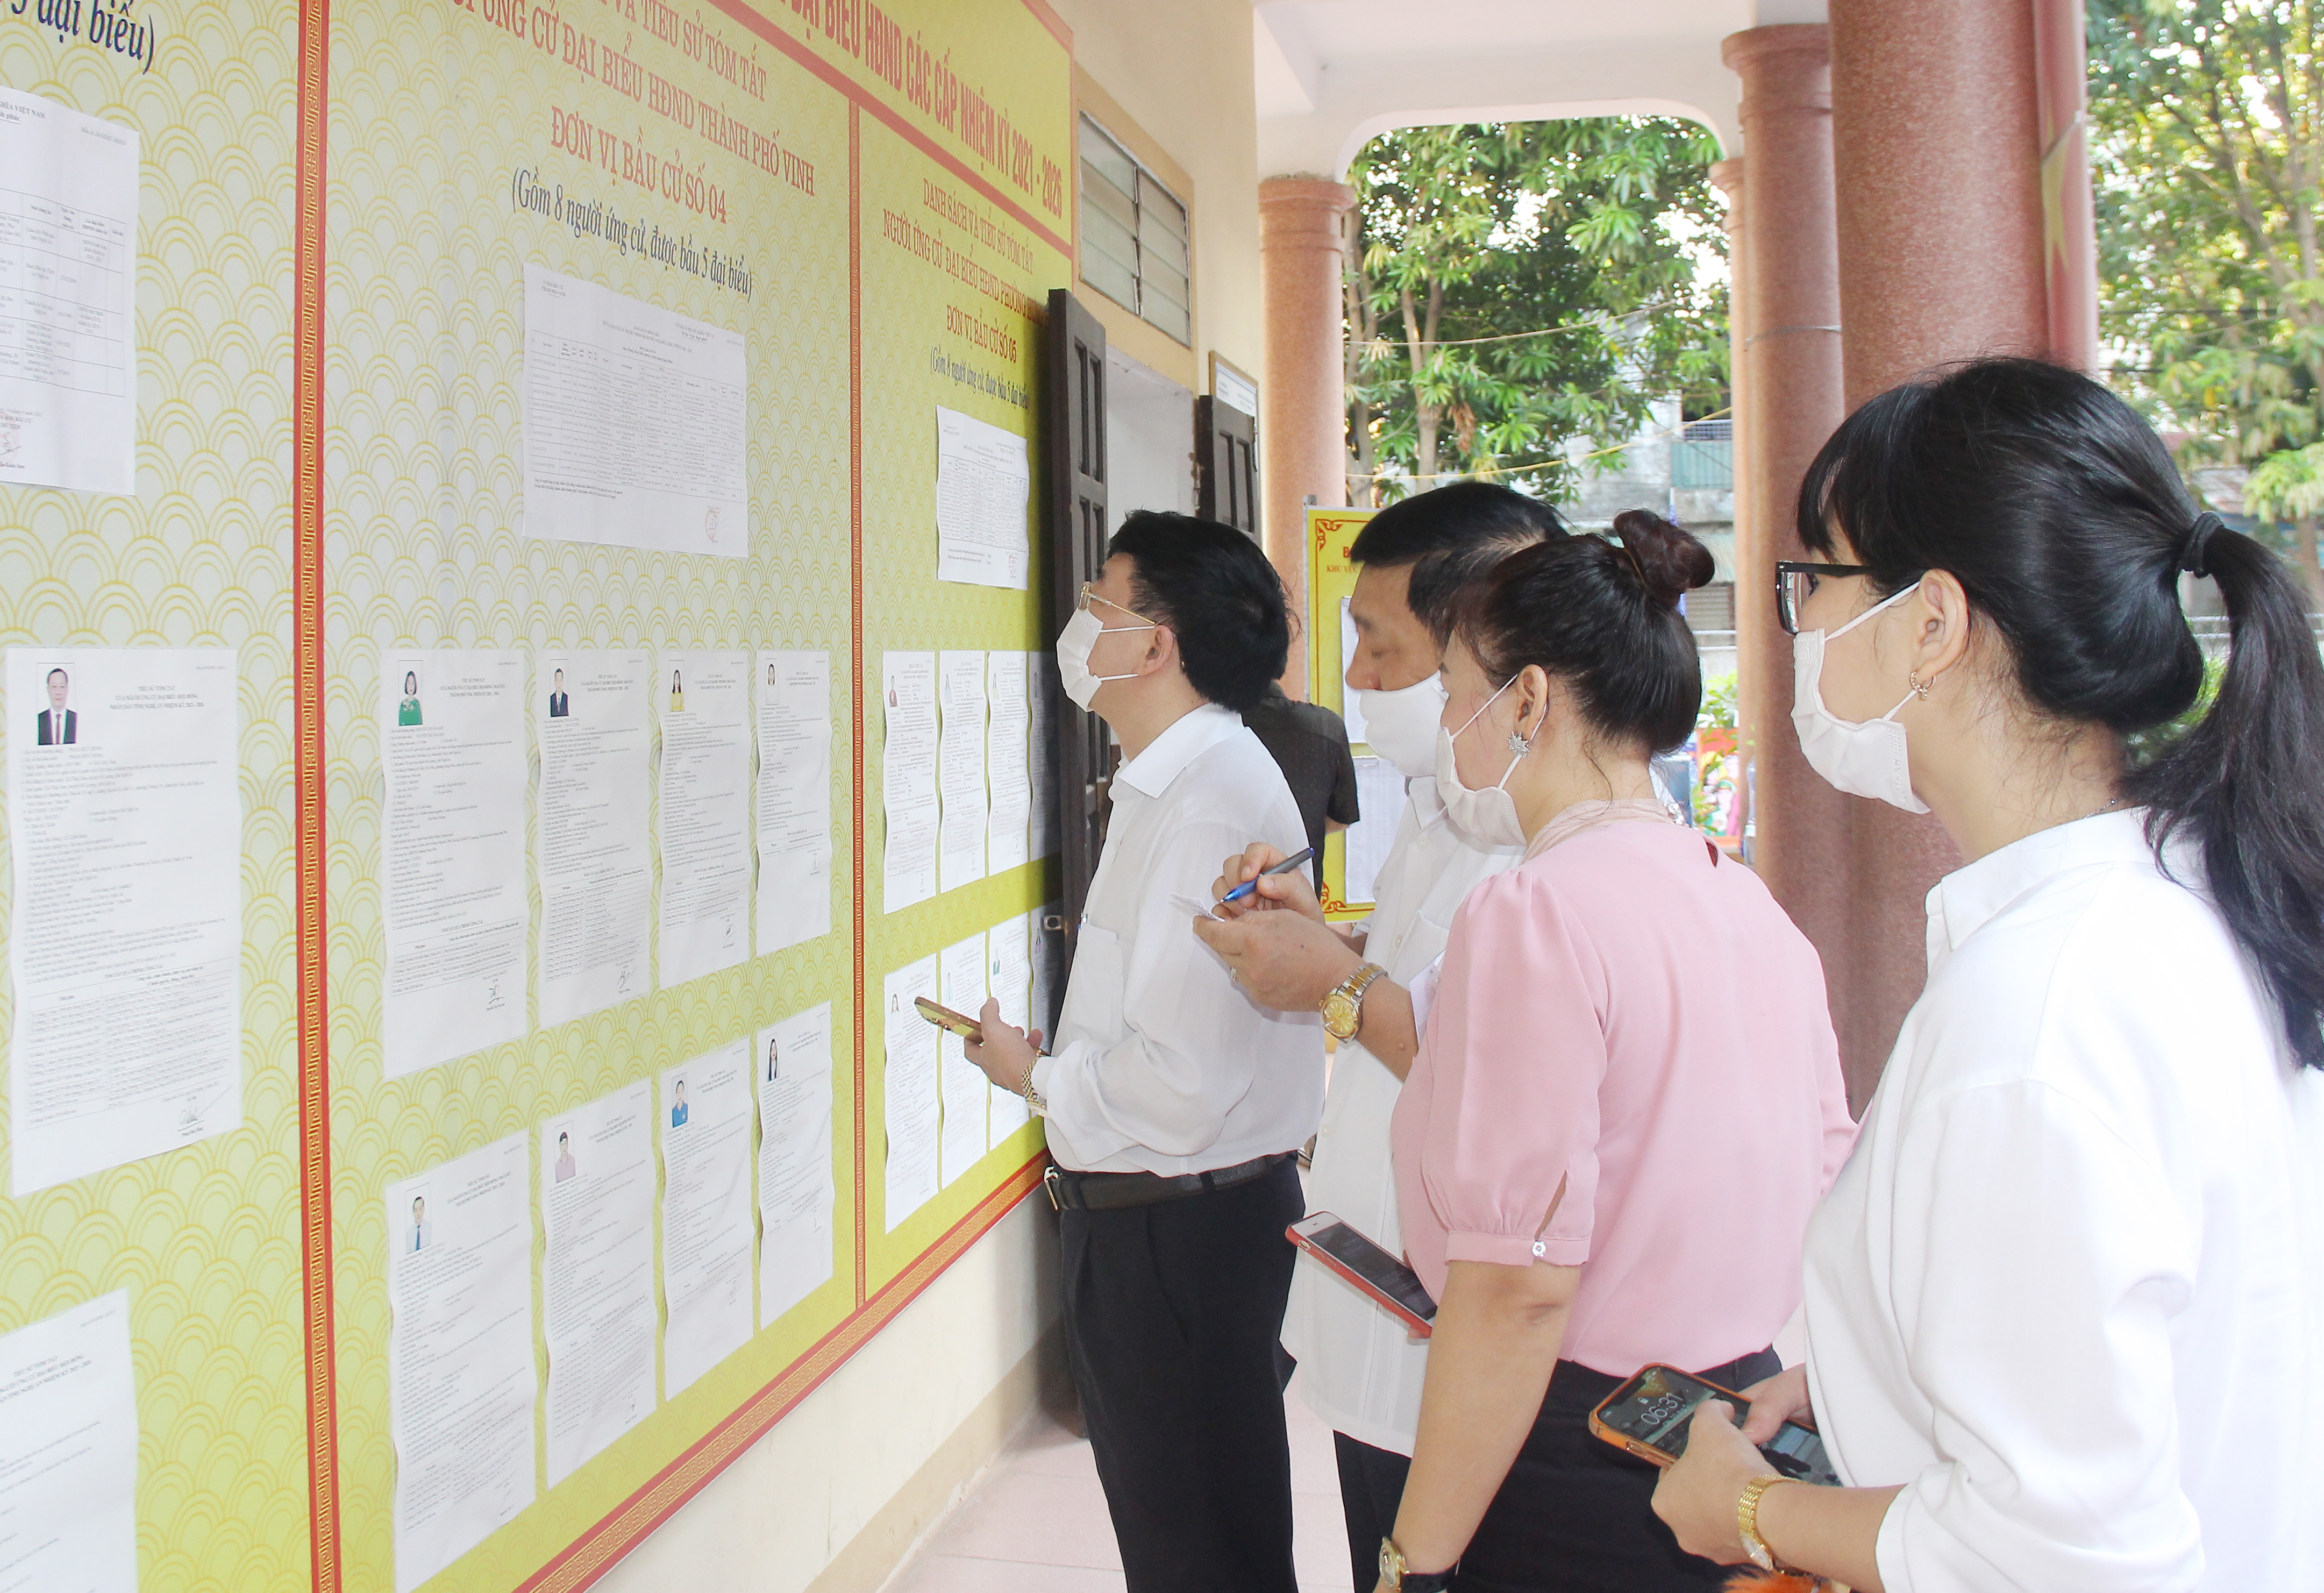 Đồng chí Nguyễn Văn Thông - Phó Bí thư Thường trực Tỉnh ủy tìm hiểu tiểu sử các ứng cử viên trước khi bỏ phiếu. Ảnh: Mai Hoa